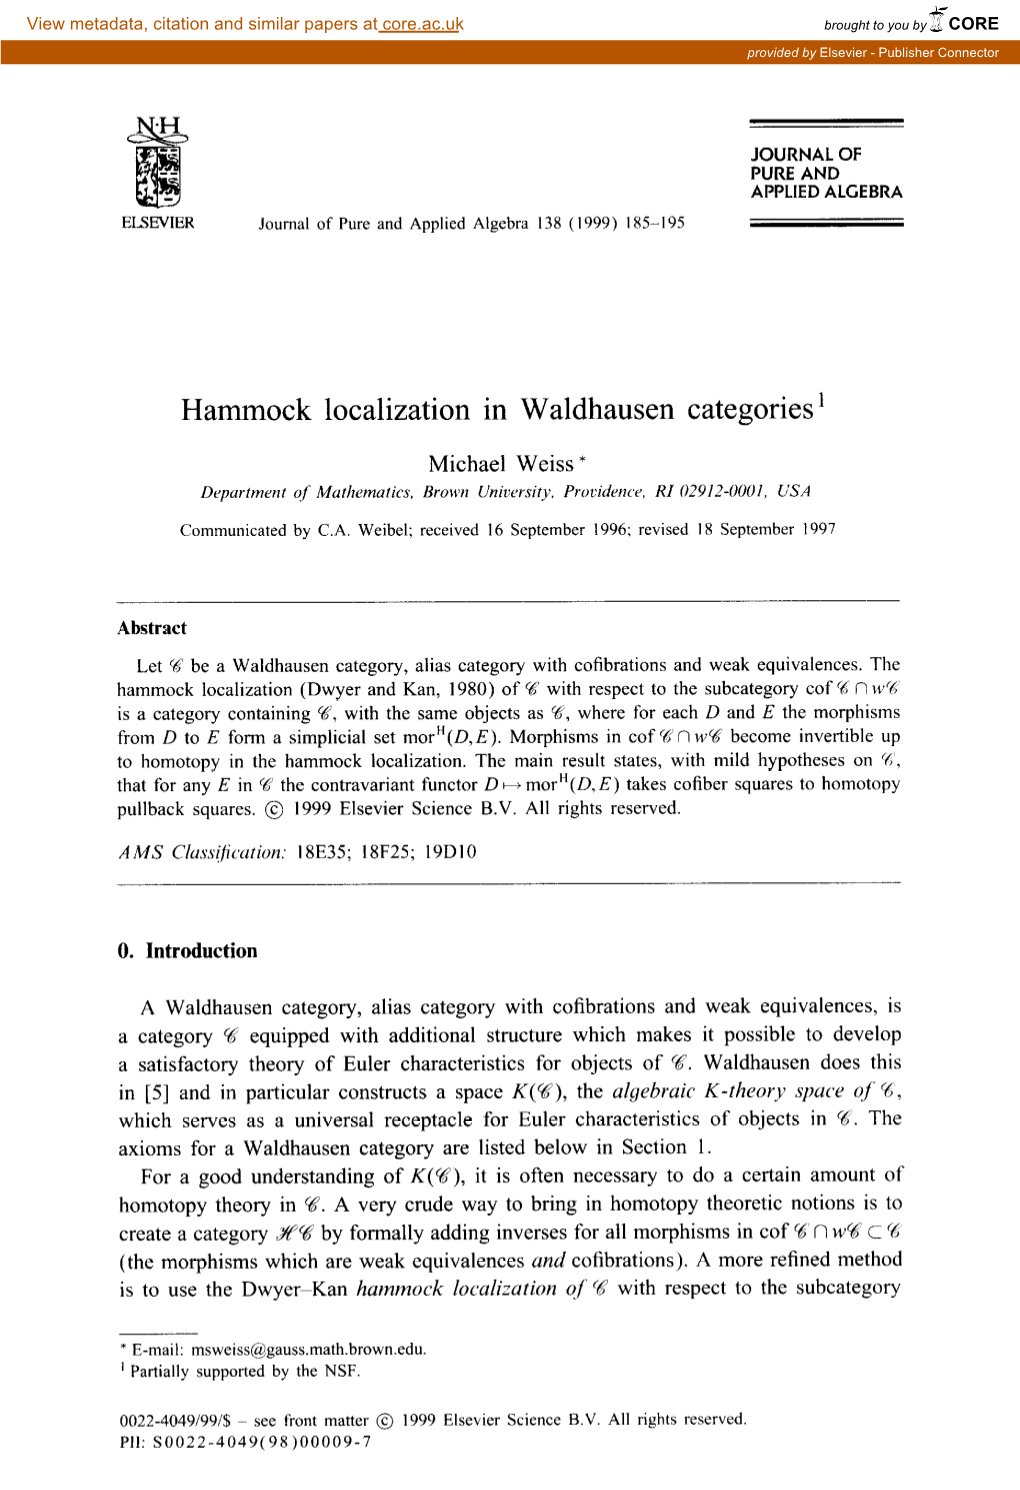 Hammock Localization in Waldhausen Categories '